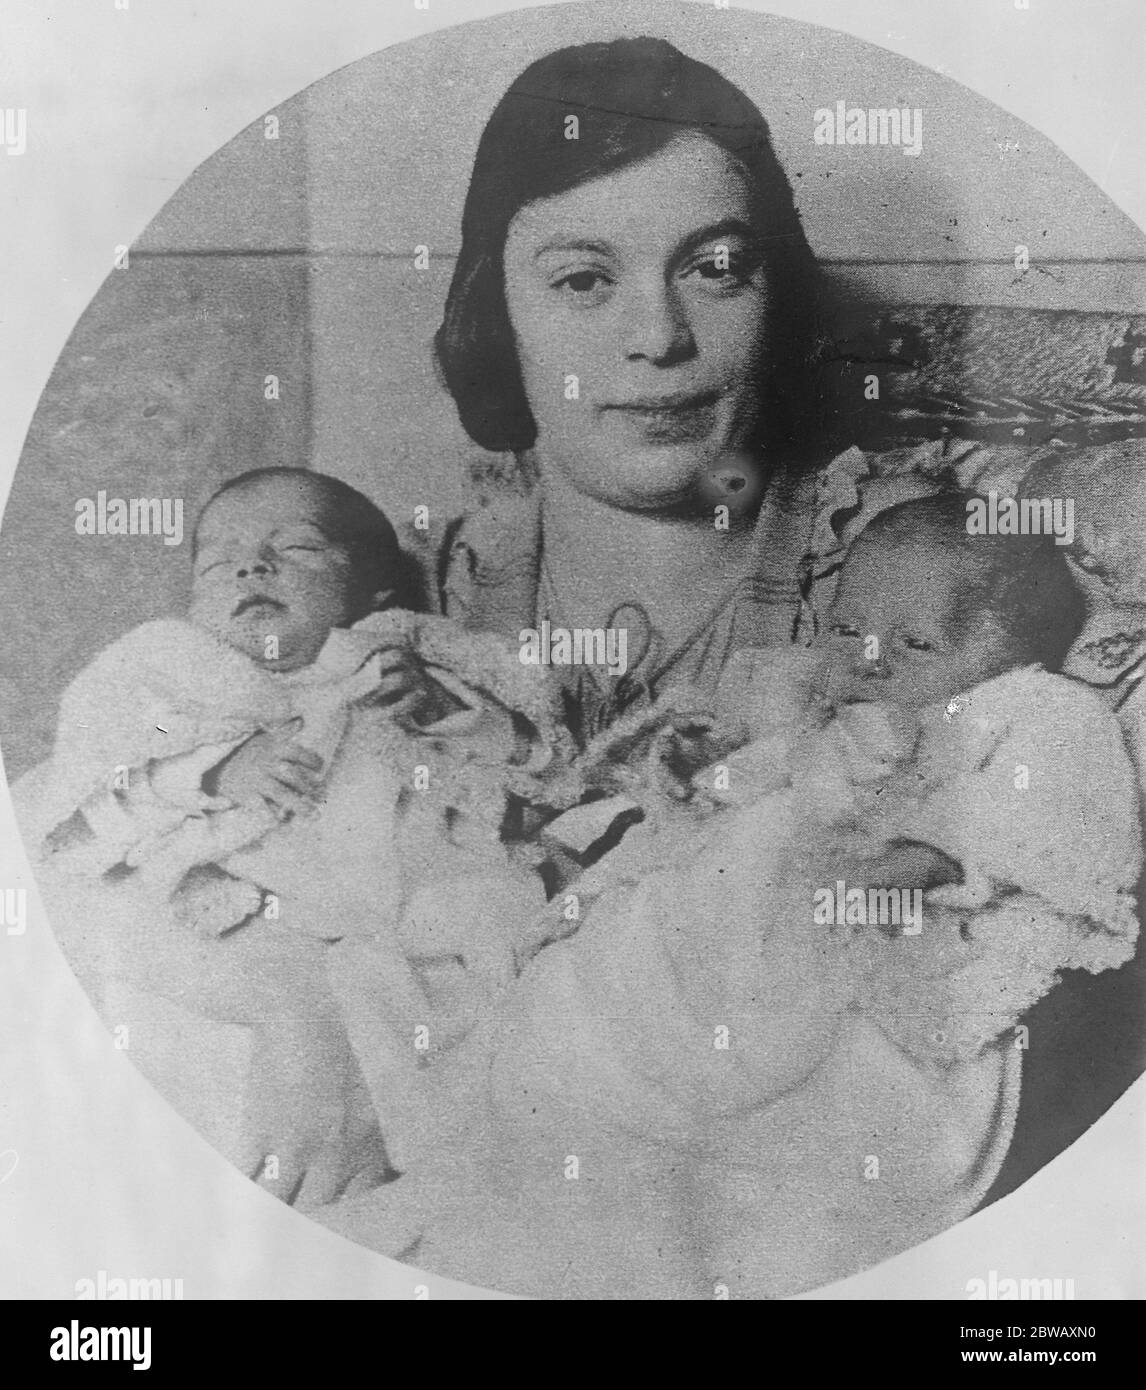 Les Twins siamois de l'Amérique . Mme Meyer Zarelzky , de New York , avec ses filles jumelles qui, le 22 novembre, sont nées enfermées dans les os et les tissus dans la région juste en dessous du cou . Ils ont été séparés avec succès et sont maintenant prospères . 10 janvier 1923 Banque D'Images